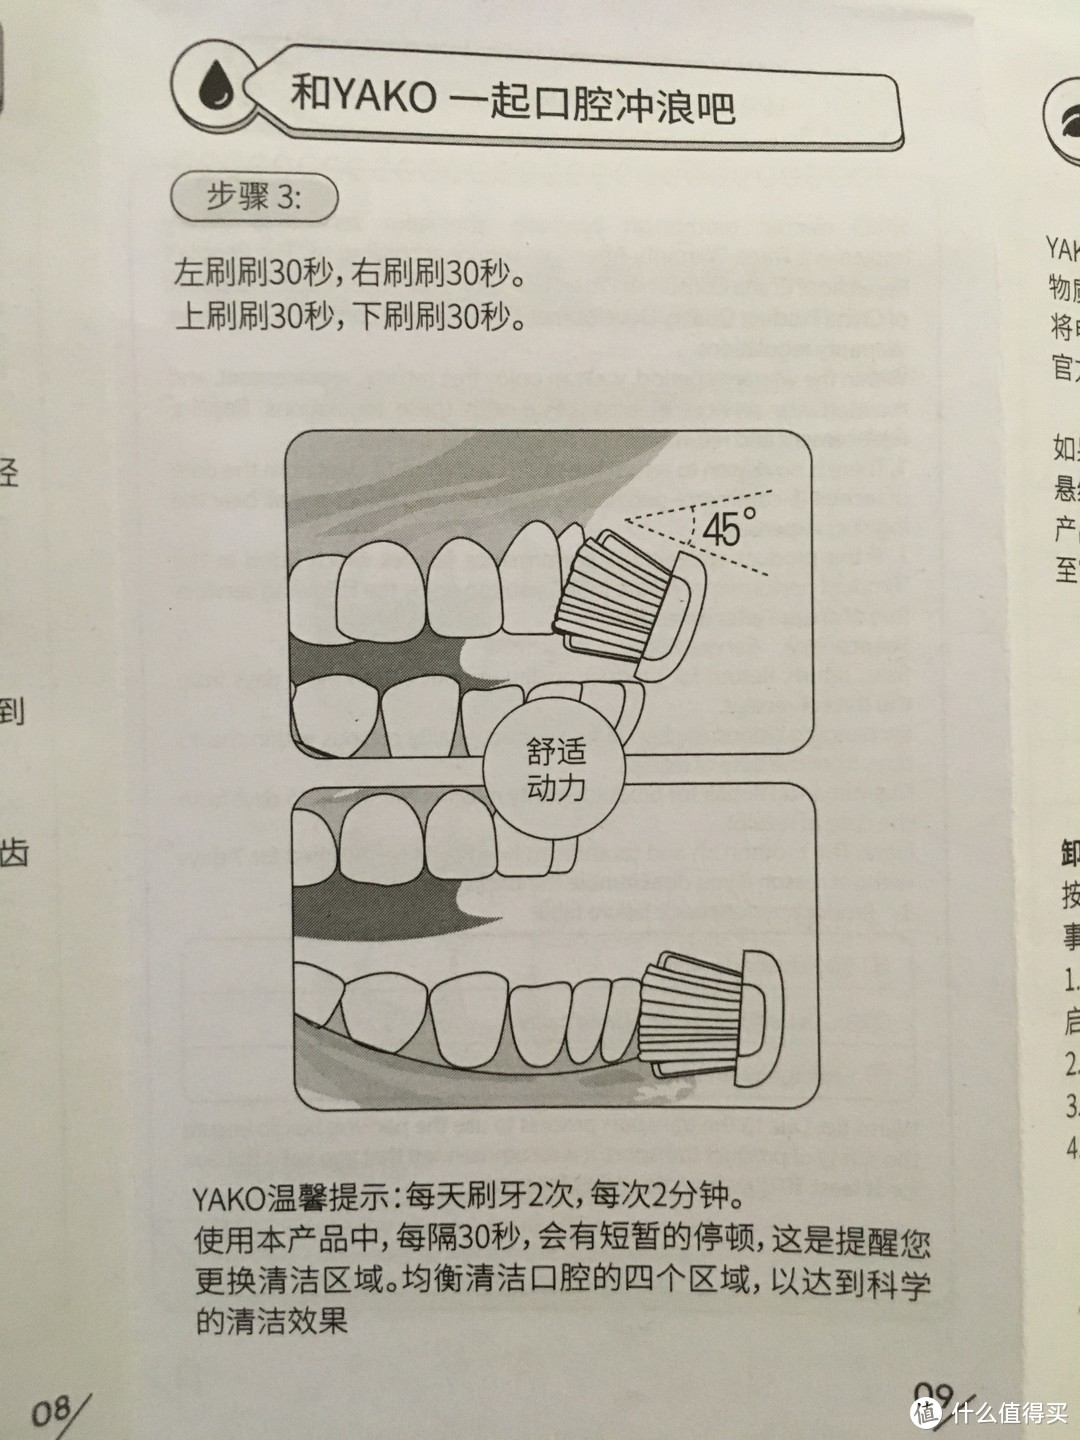 YAKO 磁悬电动牙刷 O1体验测评